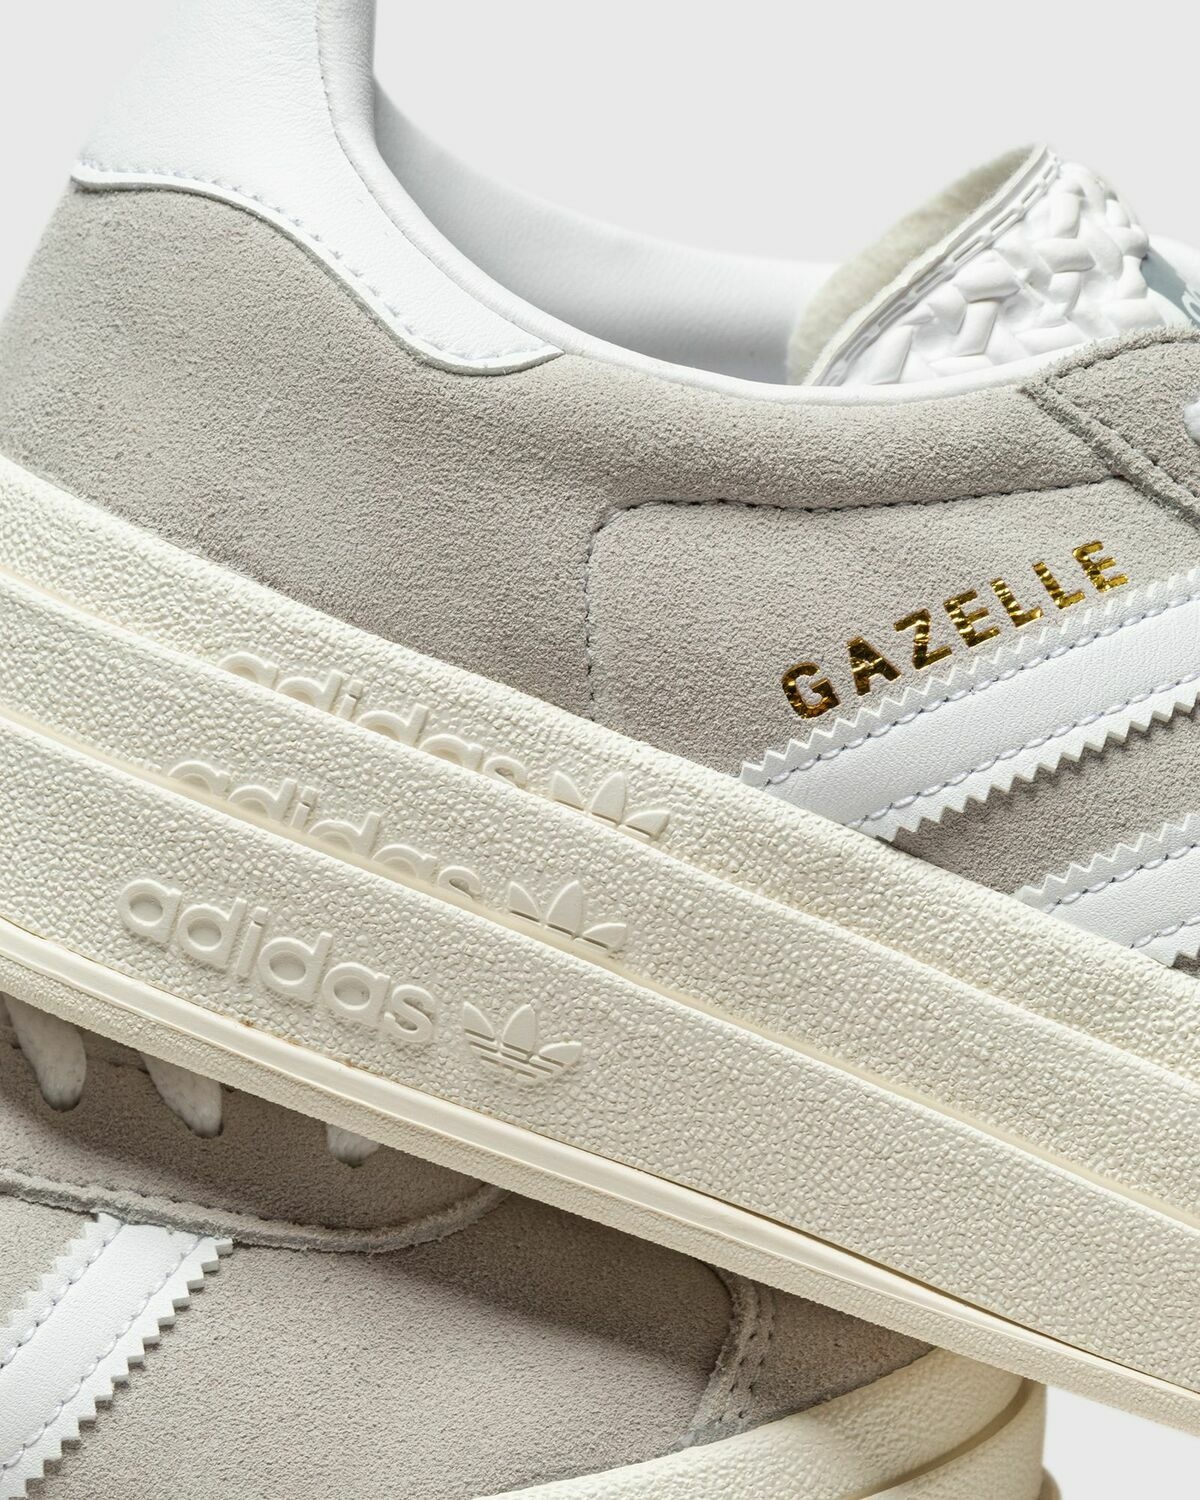 Adidas Gazelle Bold W Grey - Womens - Lowtop adidas